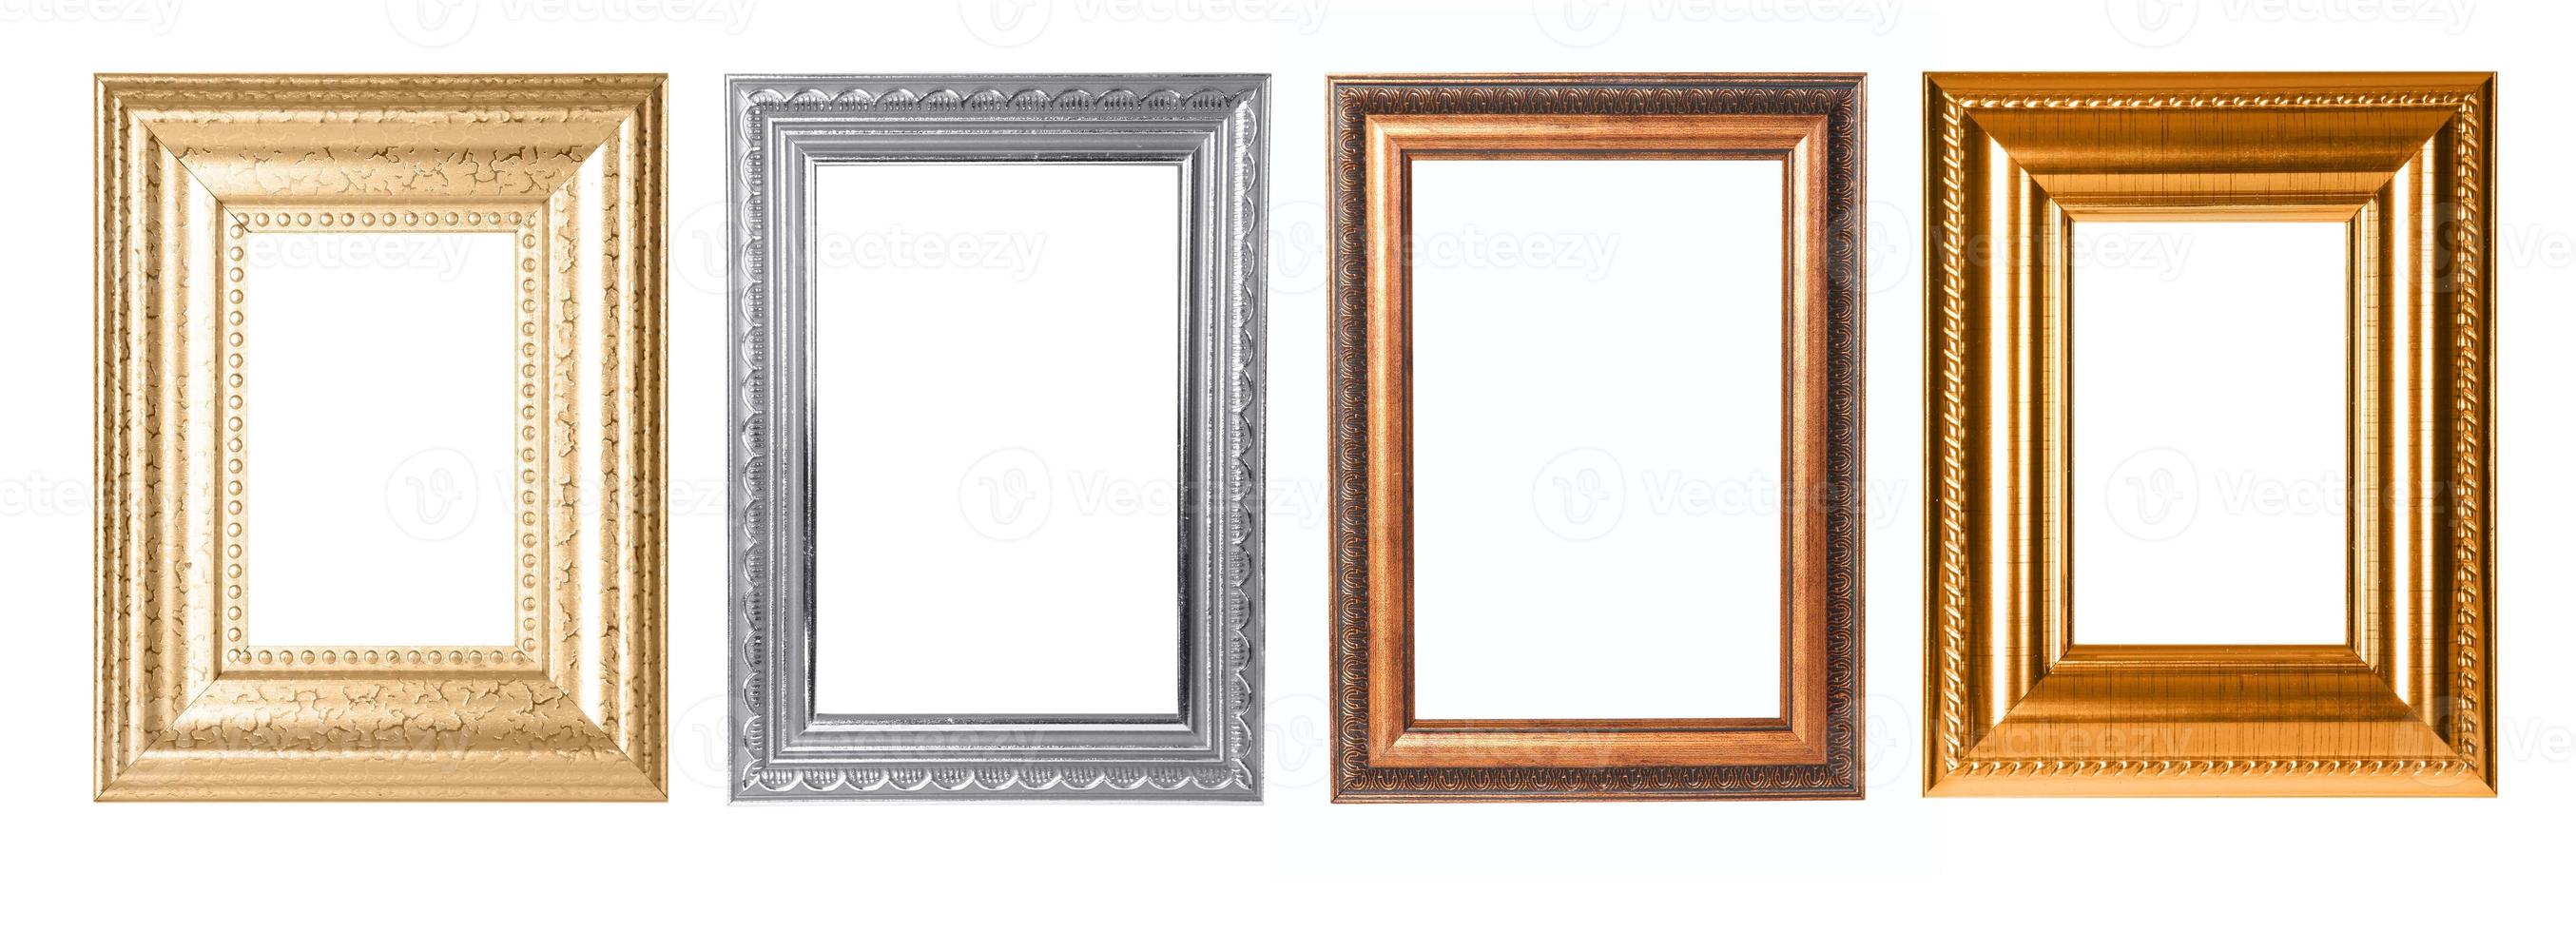 marcos decorativos rectangulares para su proyecto foto